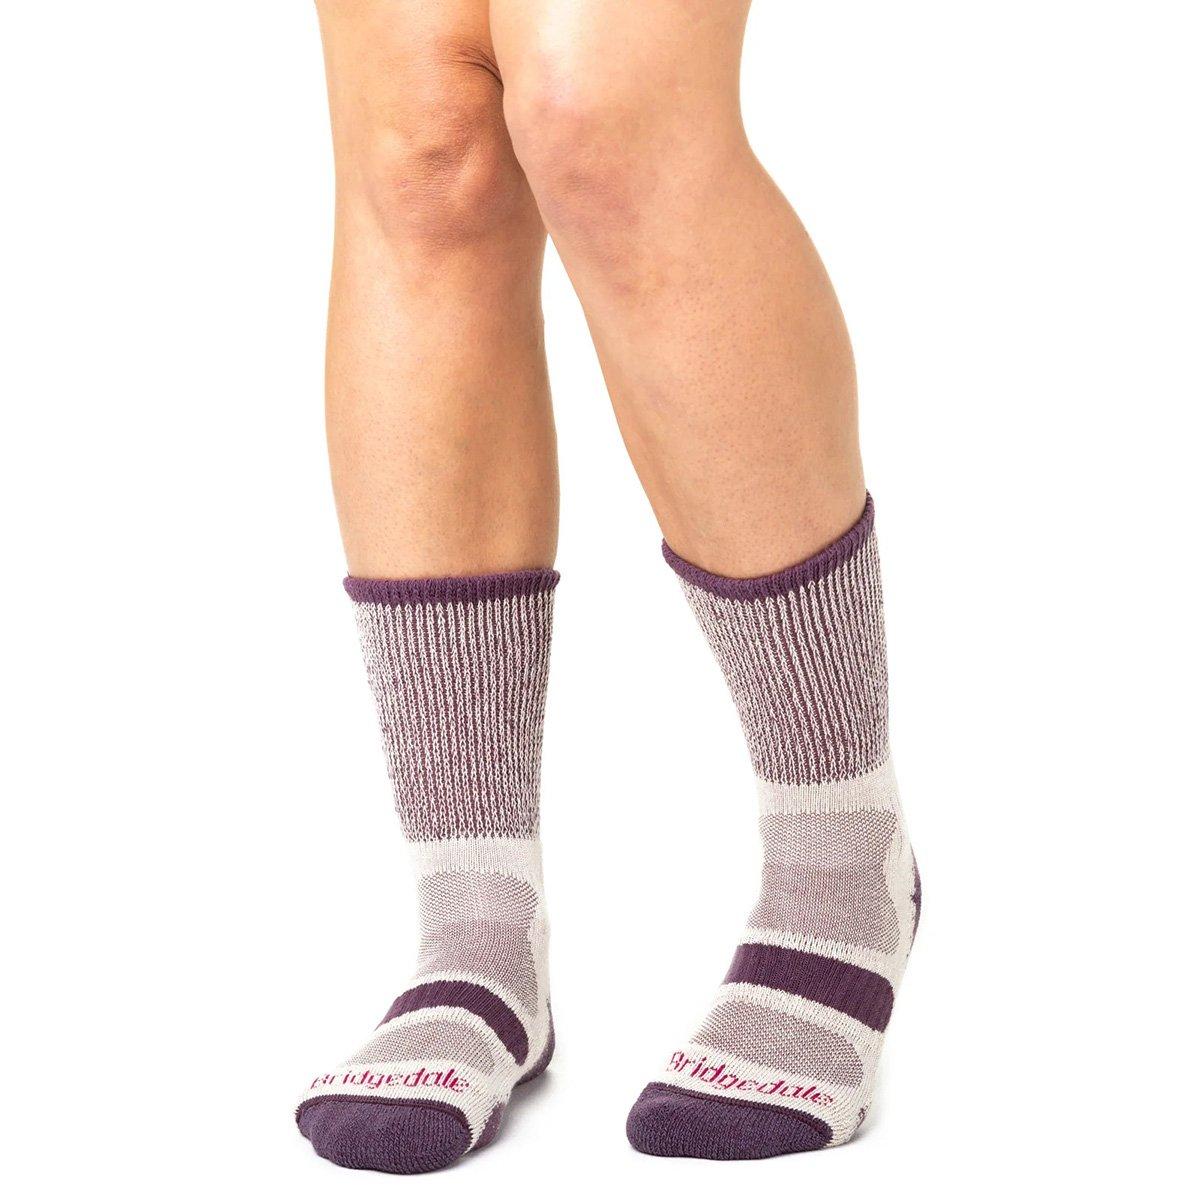 Bridgedale Women's Cotton Cool Hike Lightweight Socks - Purple